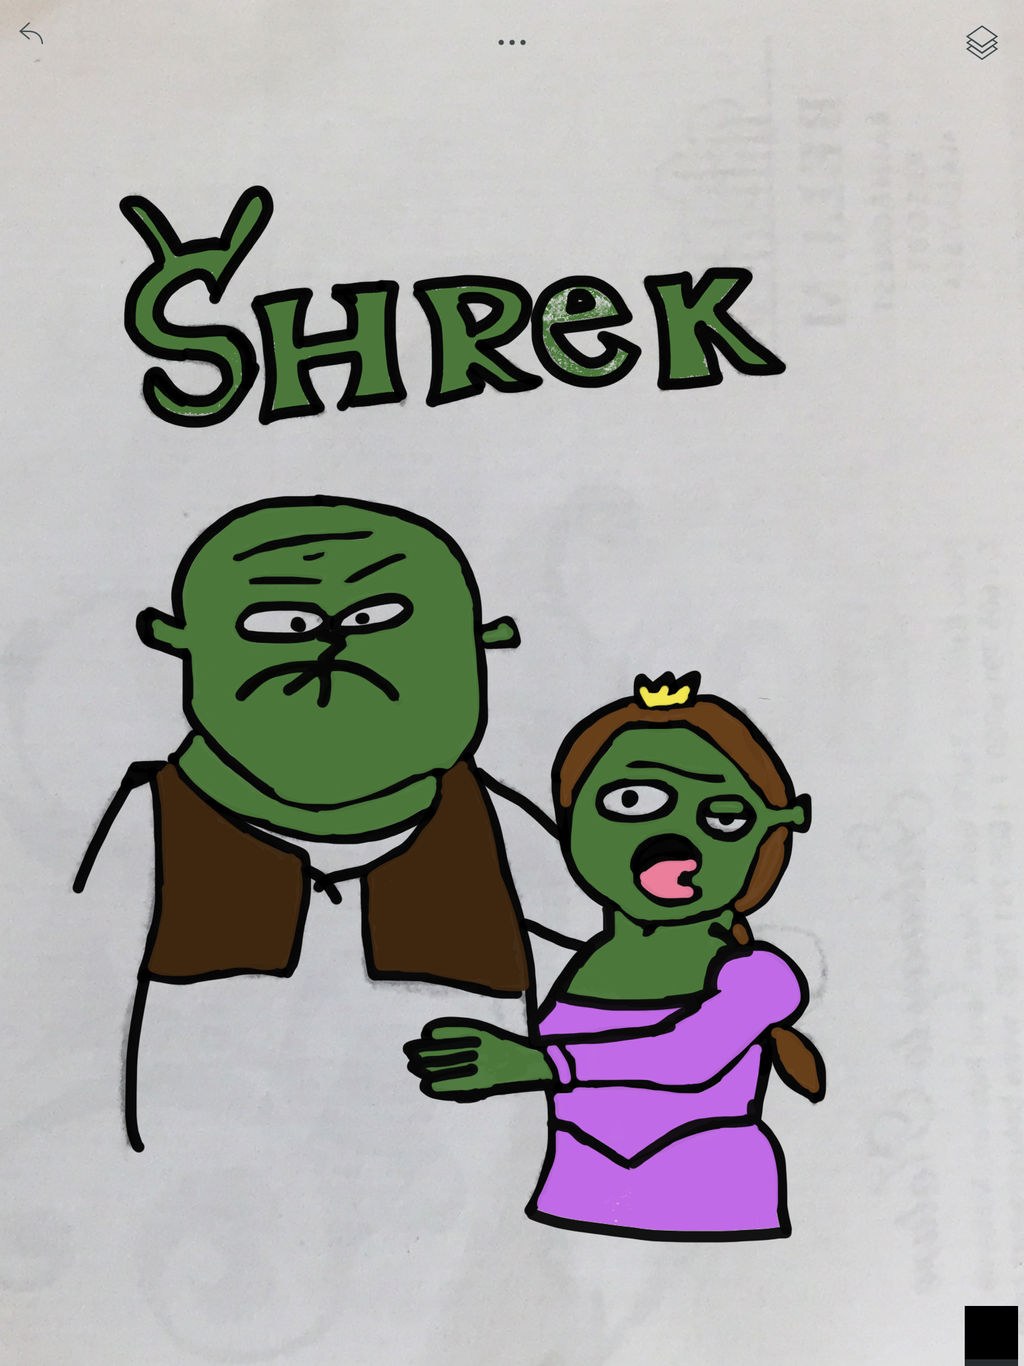 Derp Shrek meme | Poster